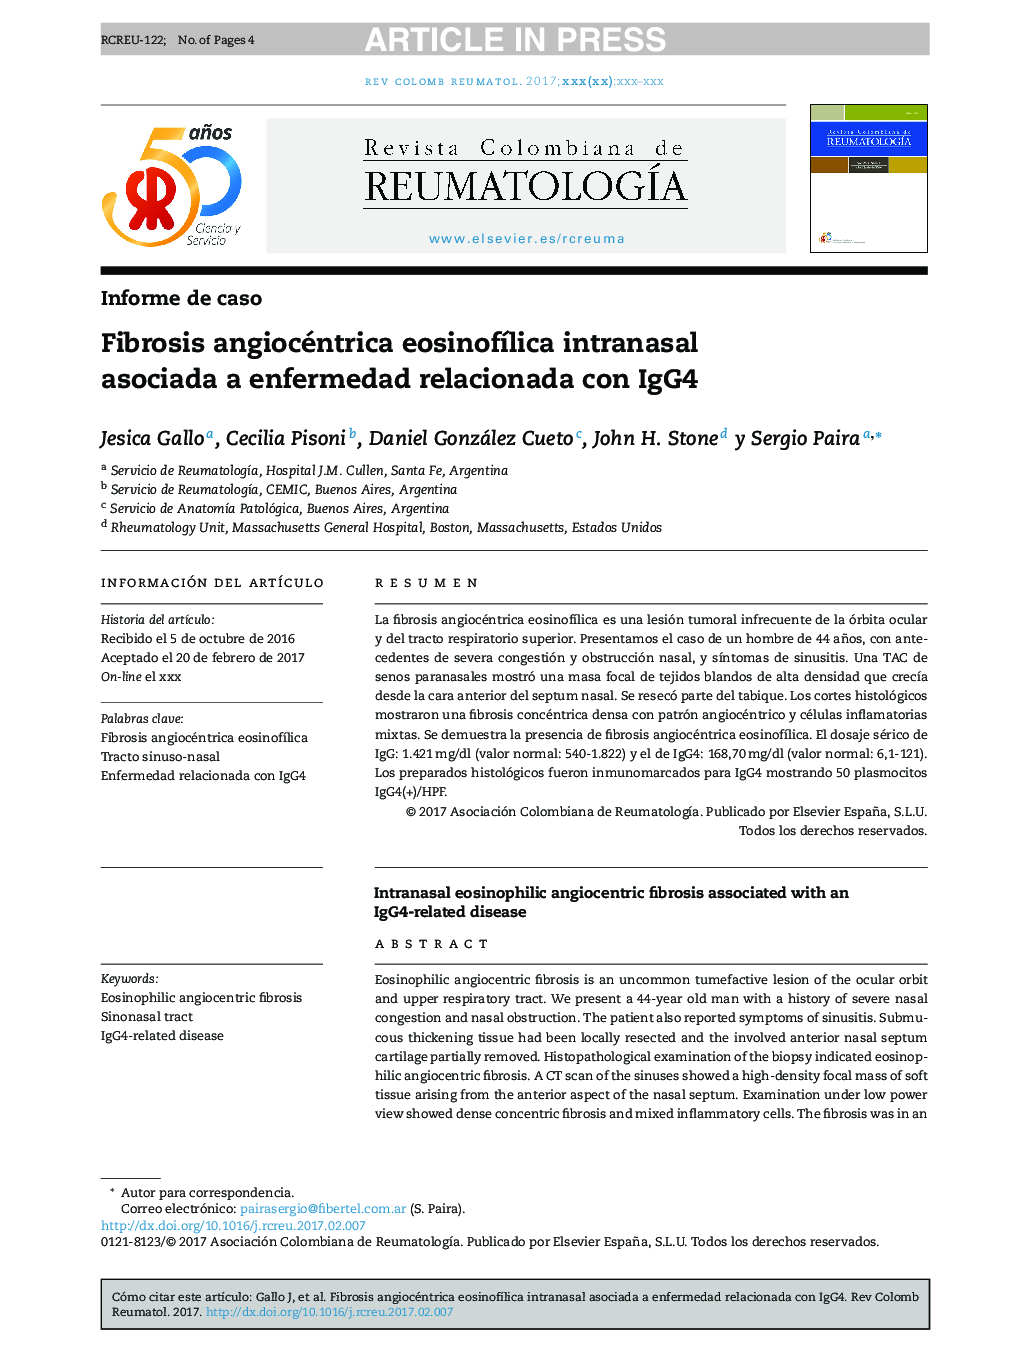 Fibrosis angiocéntrica eosinofÃ­lica intranasal asociada a enfermedad relacionada con IgG4